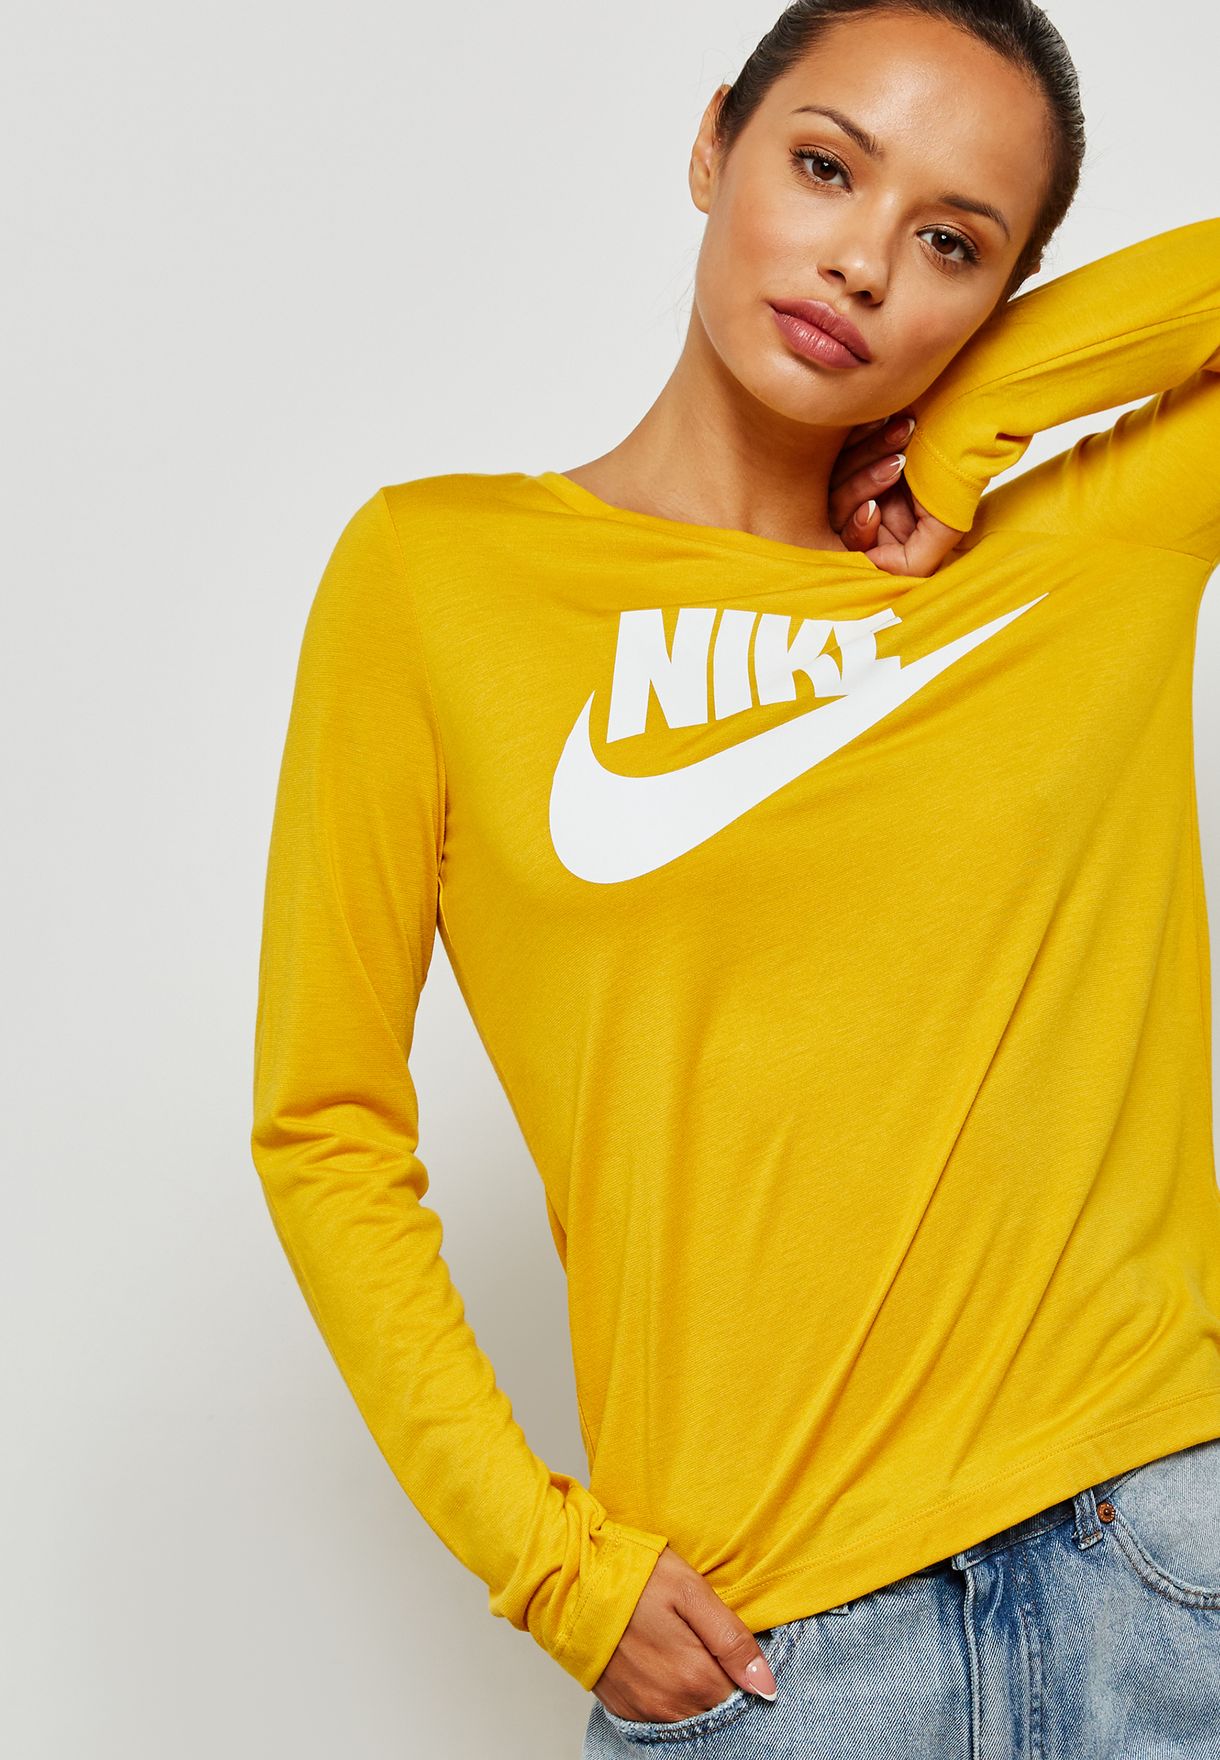 yellow nike shirt women's